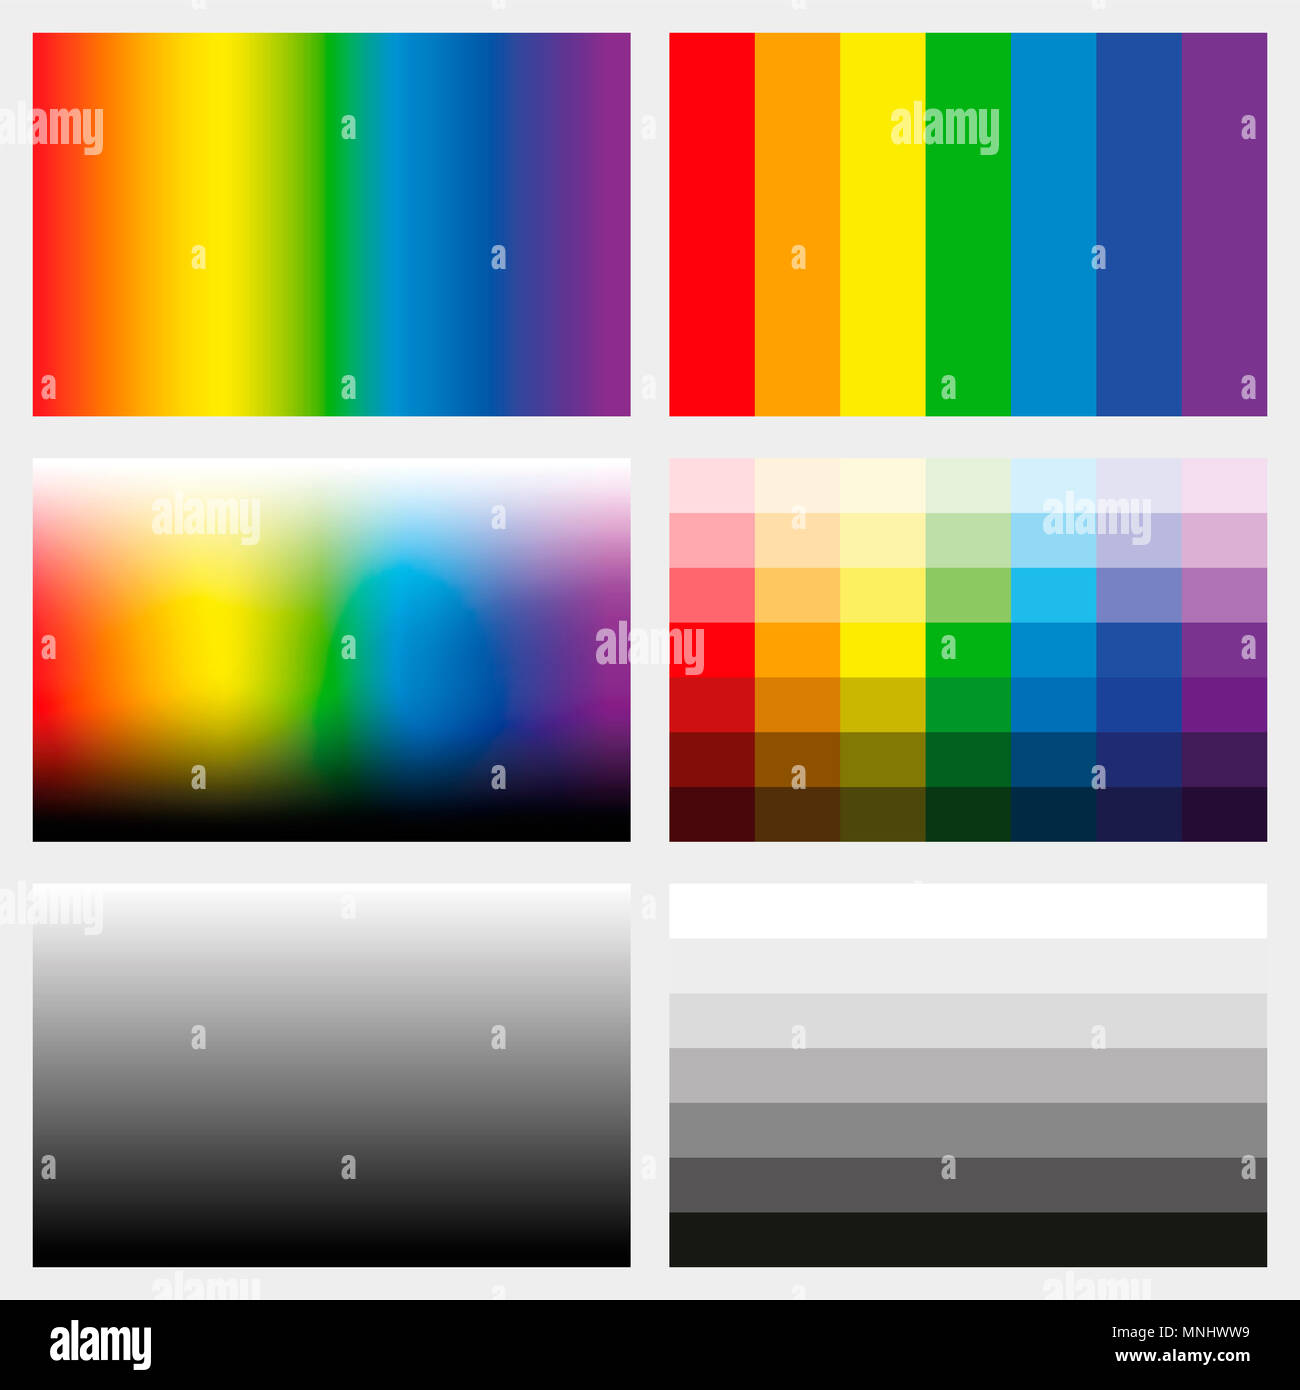 Linguette di ombra. Set di gradienti di colore, scala di grigi e spettri di saturazione in diverse gradazioni di colore da chiaro a scuro - strumento di lavoro per la progettazione grafica. Foto Stock